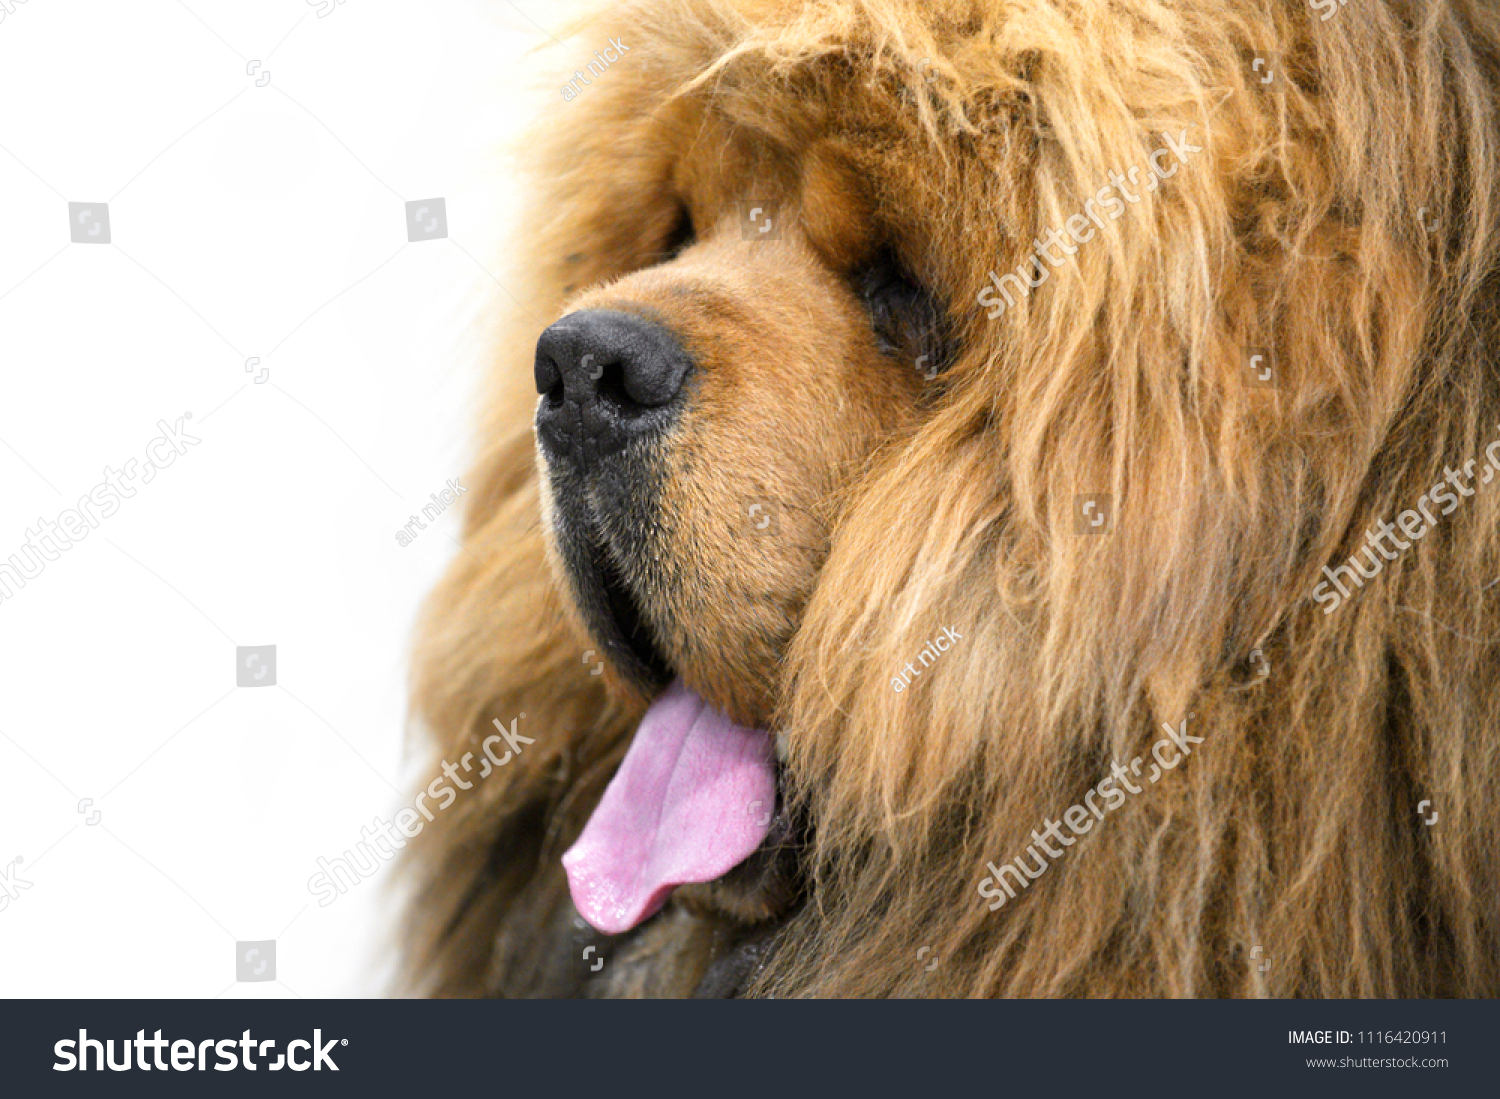 Red Chinesebred Tibetan Mastiff Dog Lion Animals Wildlife Stock Image 1116420911